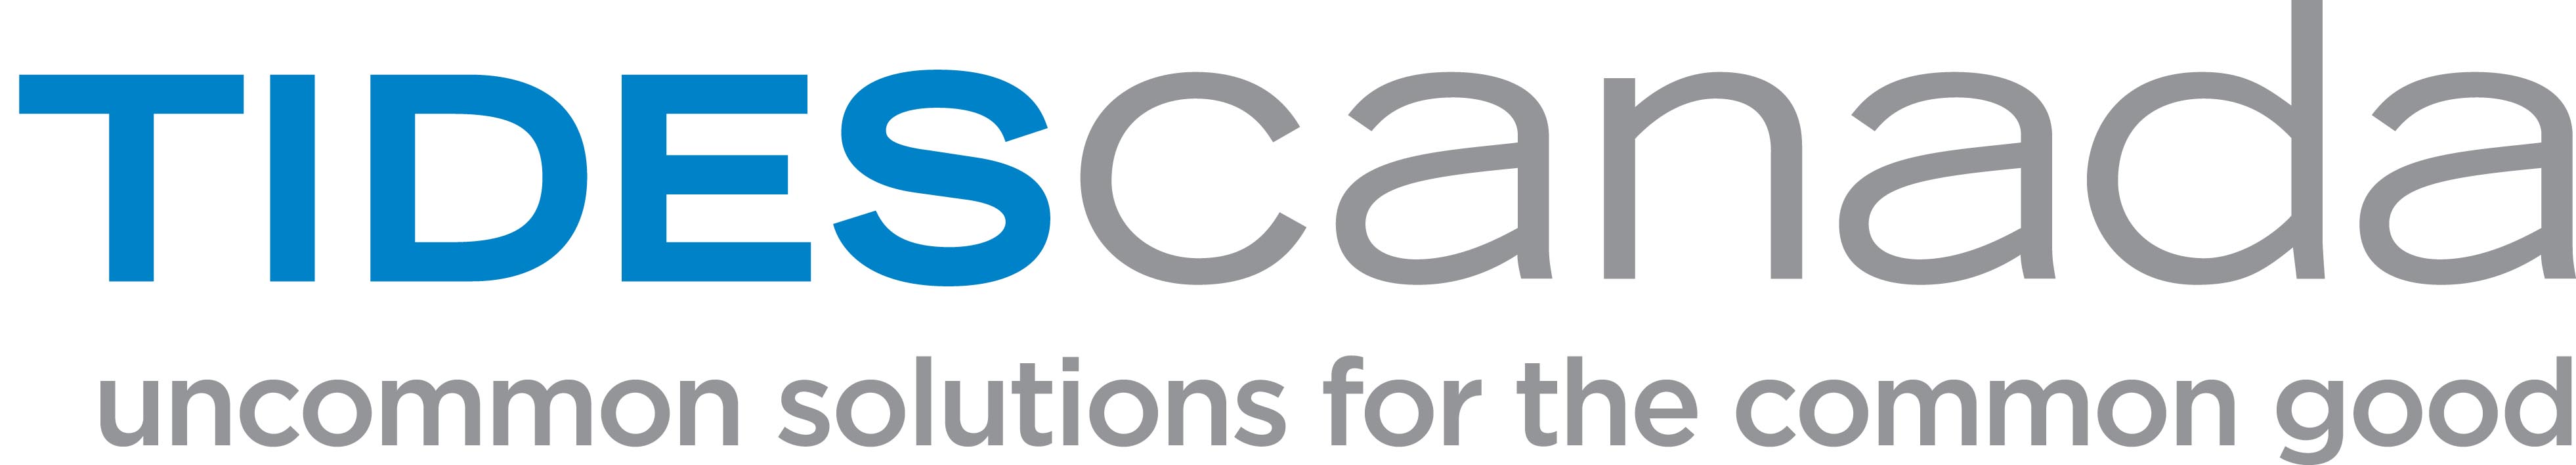 Tides Canada Foundation logo